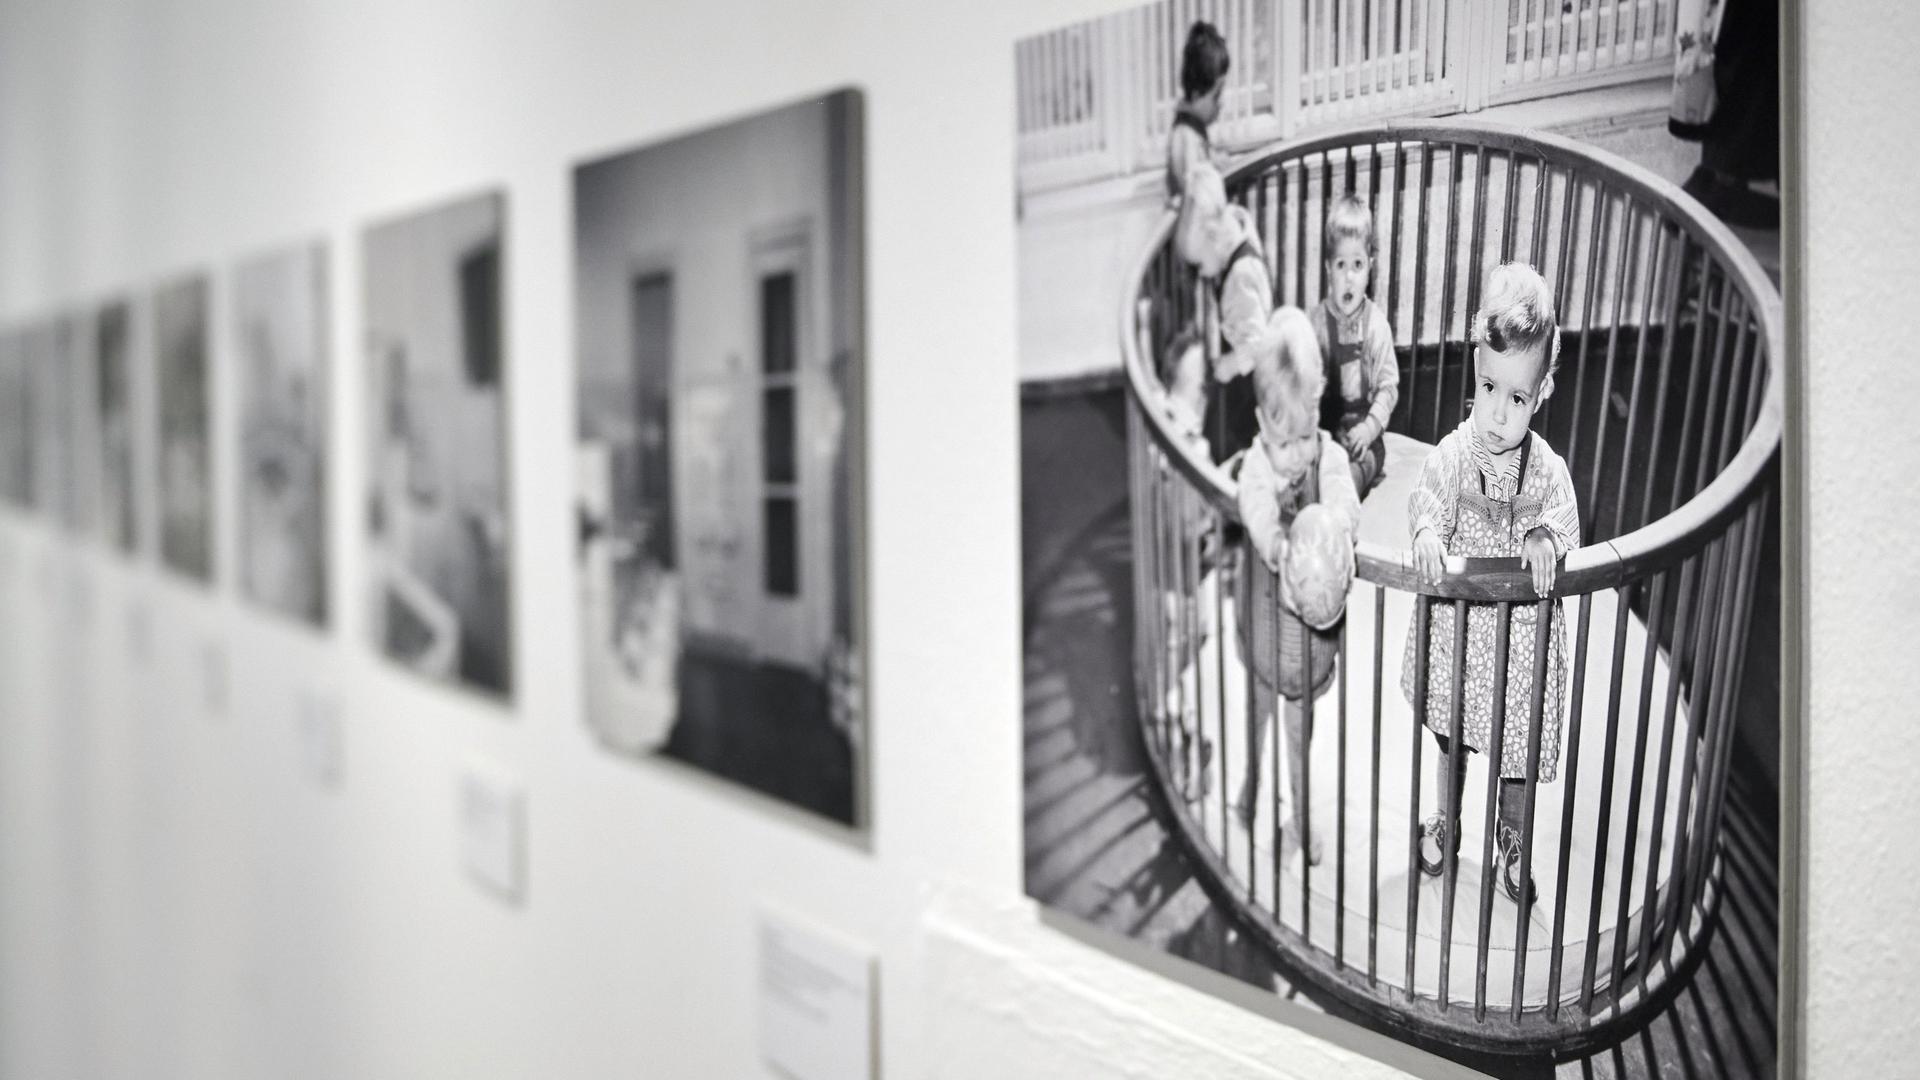 Fotos von kleinen Kindern in einem Gitterbett in der Ausstellung "Wochenkrippen in der DDR" in der Kunsthalle Rostock. Die Ausstellung zeigt rund 20 Kunstwerke zum Thema, ergänzt durch Fotografien und Objekte aus ehemaligen Wochenkrippen sowie Texttafeln und Filme.